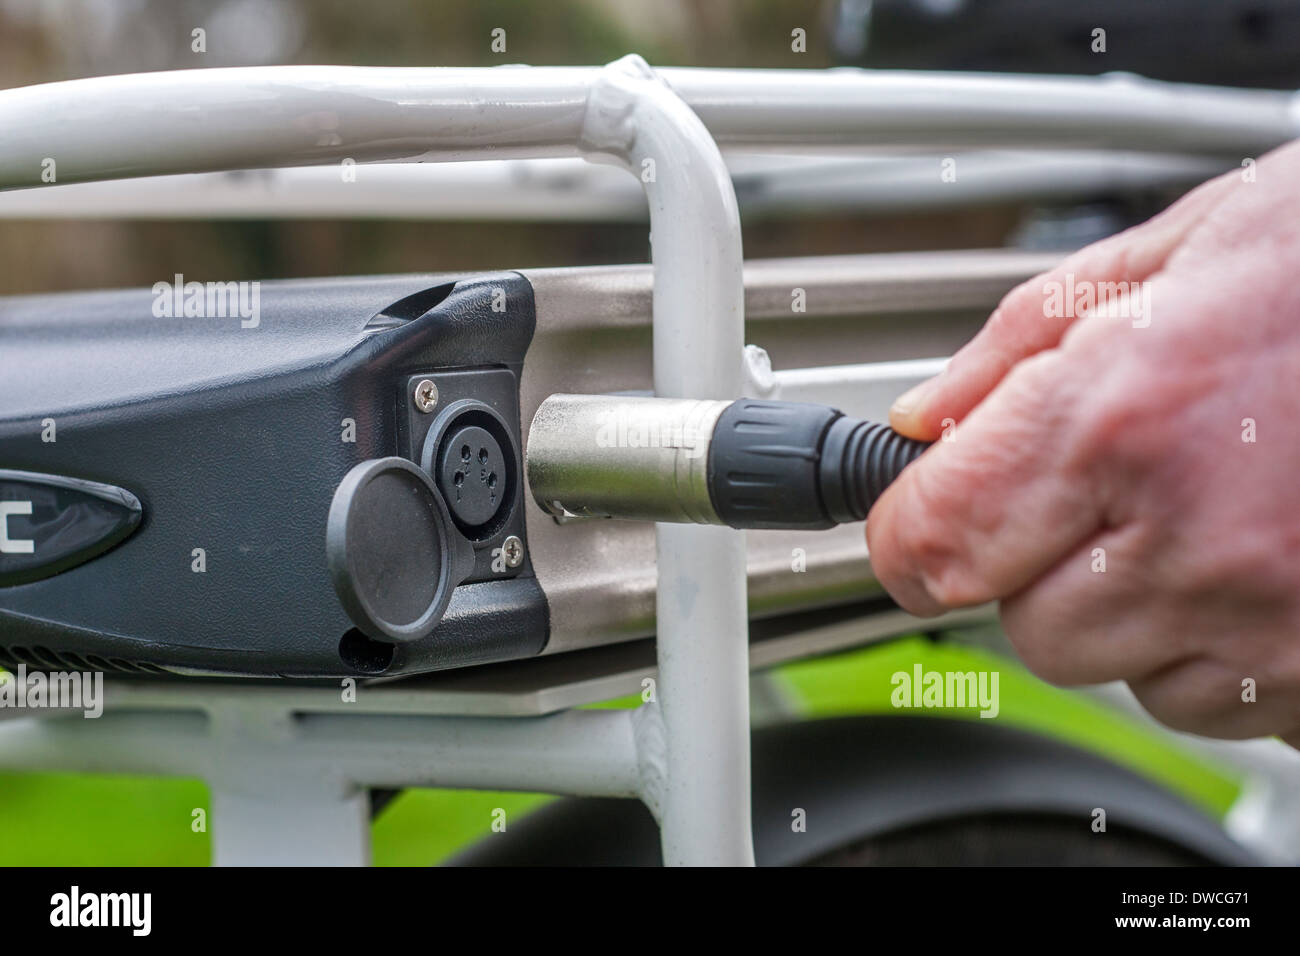 Homme de brancher le câble dans l'ensemble de batterie Li-ion pour charger / pedelec e-bike vélo électrique / Banque D'Images